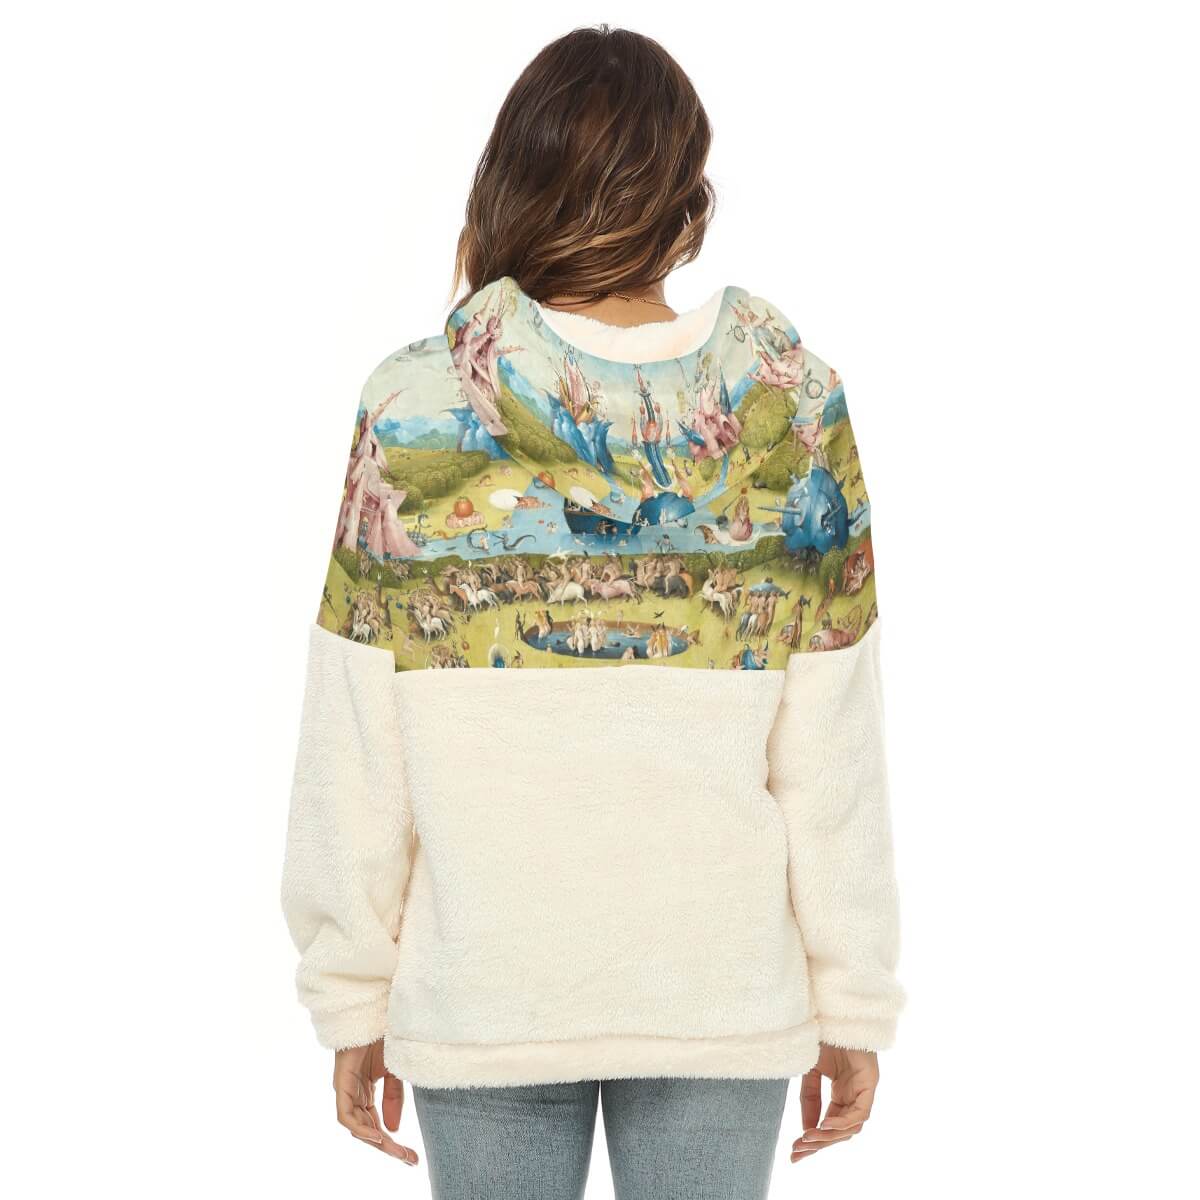 Artistic Half-Zip Fleece Sweatshirt